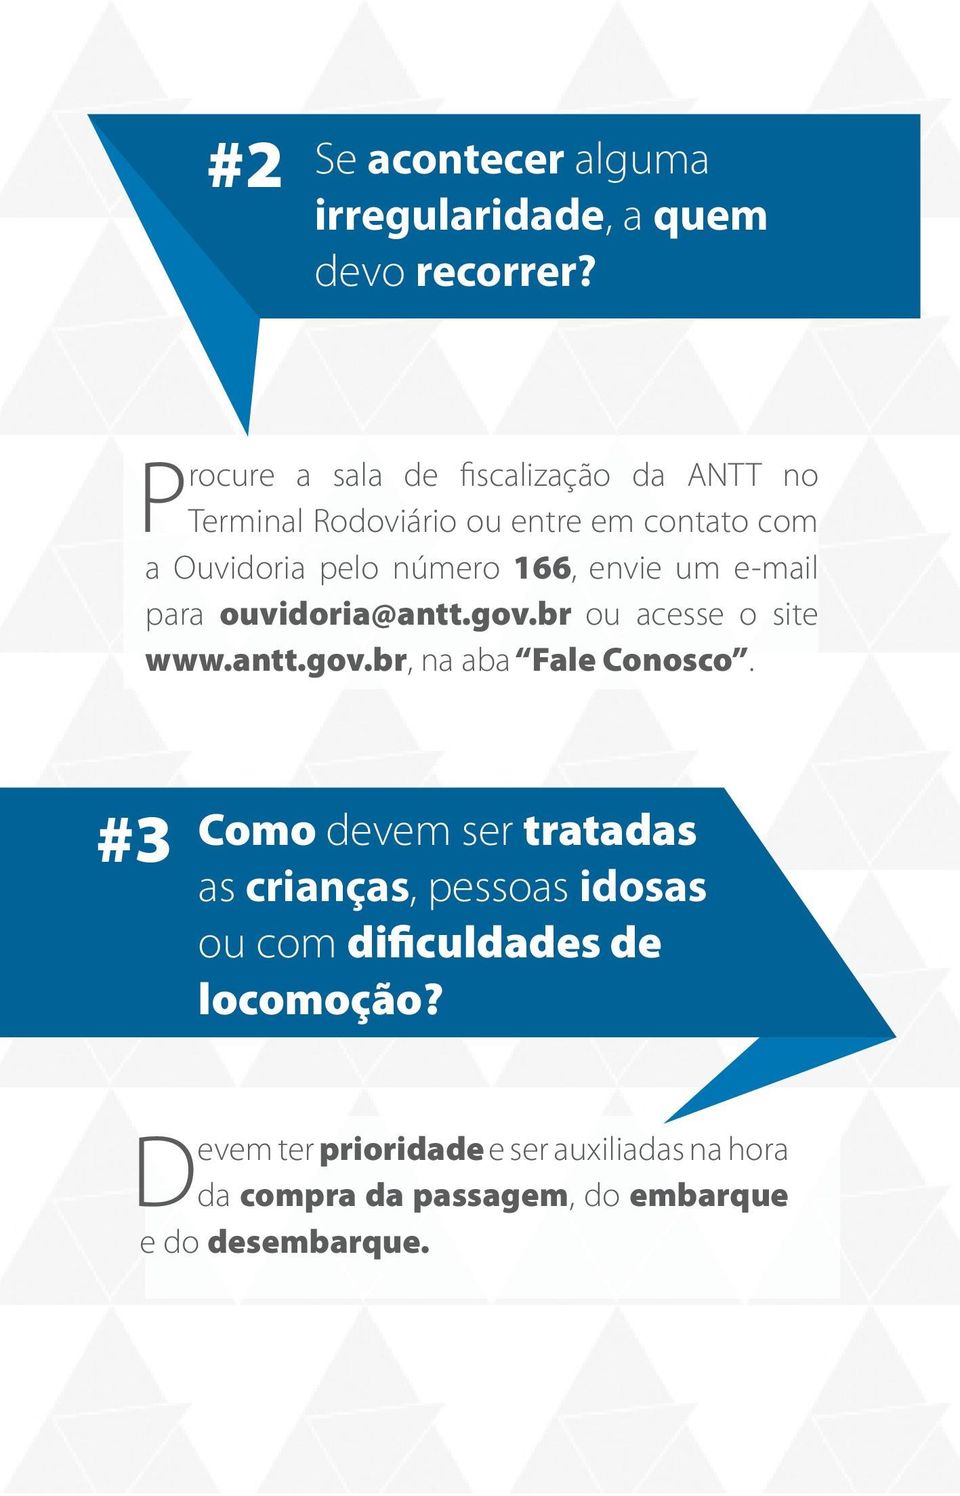 envie um e-mail para ouvidoria@antt.gov.br ou acesse o site www.antt.gov.br, na aba Fale Conosco.